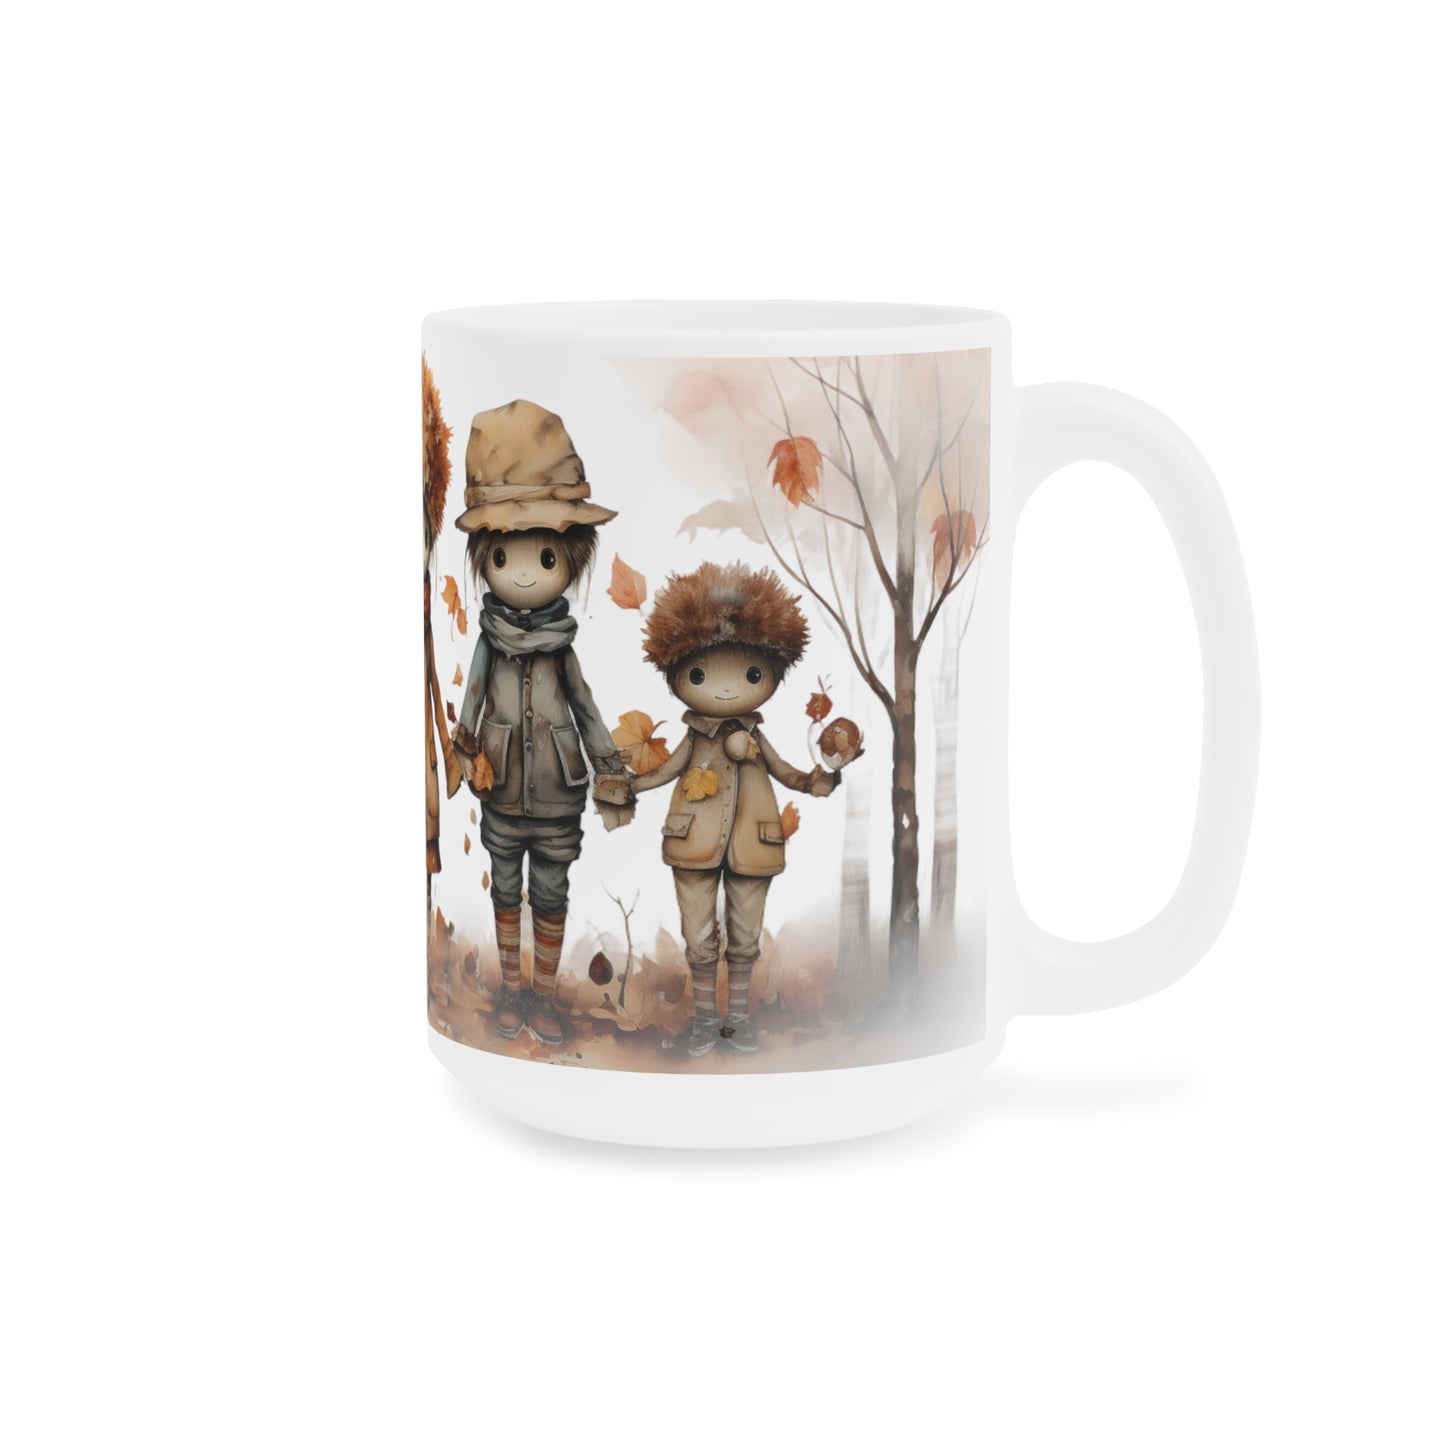 Autumn Scarecrow Friends | Autumn Fall Coffee Mug | Rustic Fall Mug | Watercolor Fall Mug